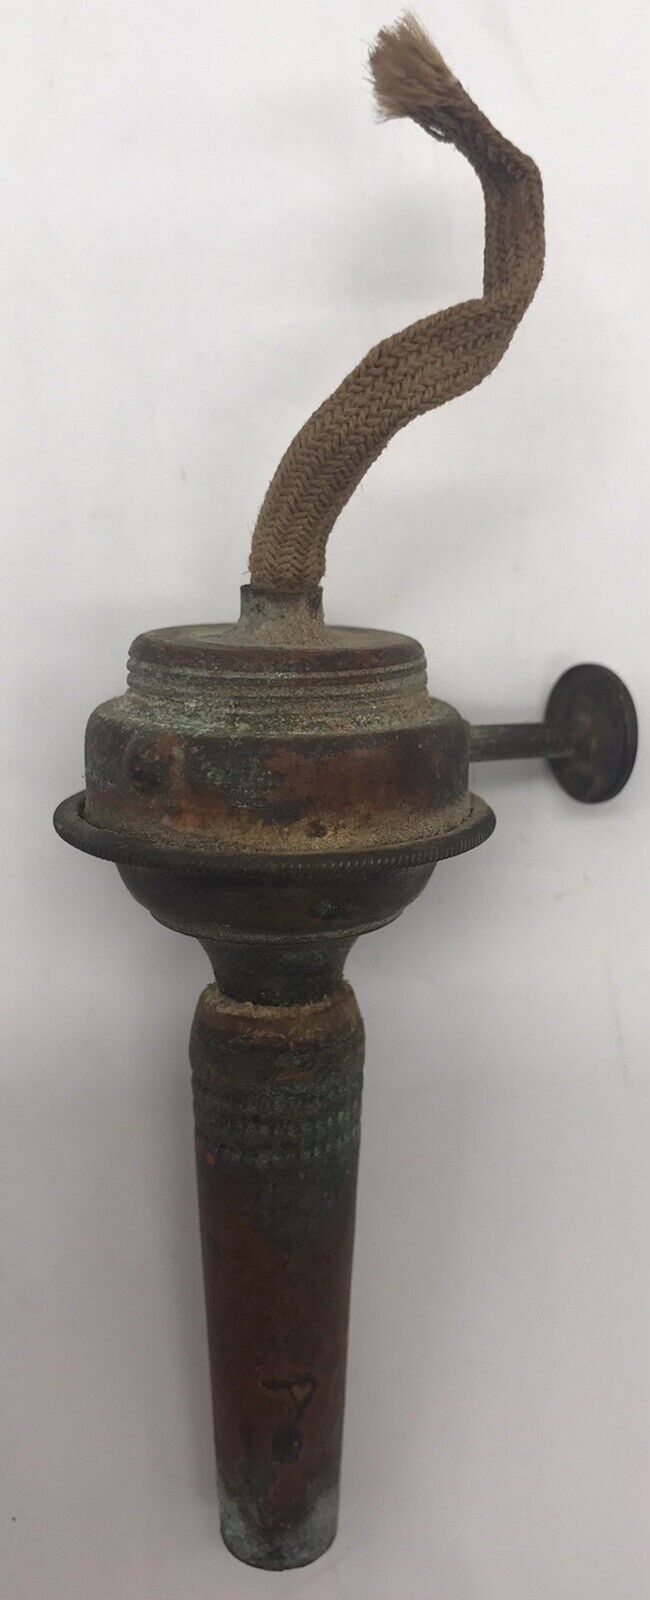 UNIQUE ANTIQUE D.SYMONDS PAT MAR 7 1865 BRASS LAMP OIL-BURNER